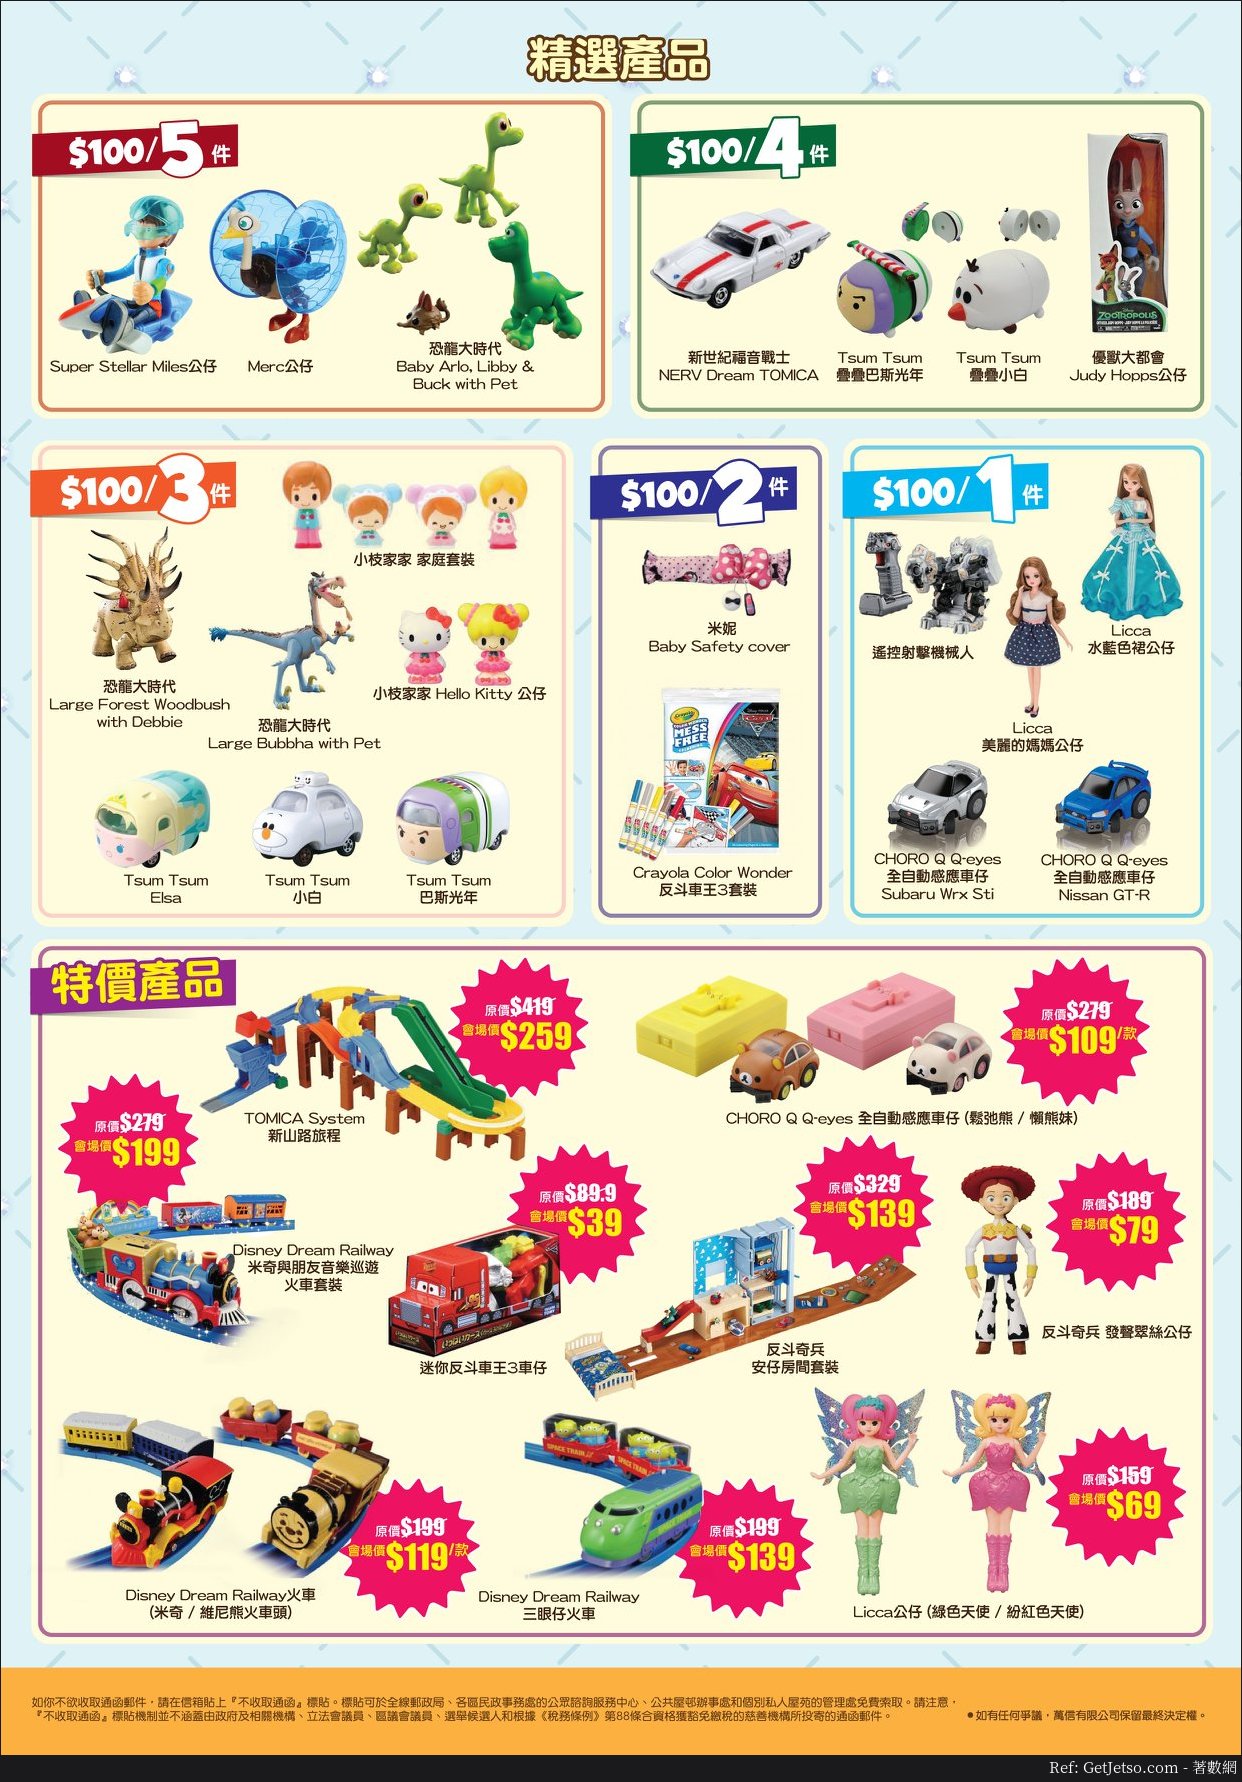 Mikiki 日本名牌玩具小鎮低至1折開倉優惠(至18年10月28日)圖片4